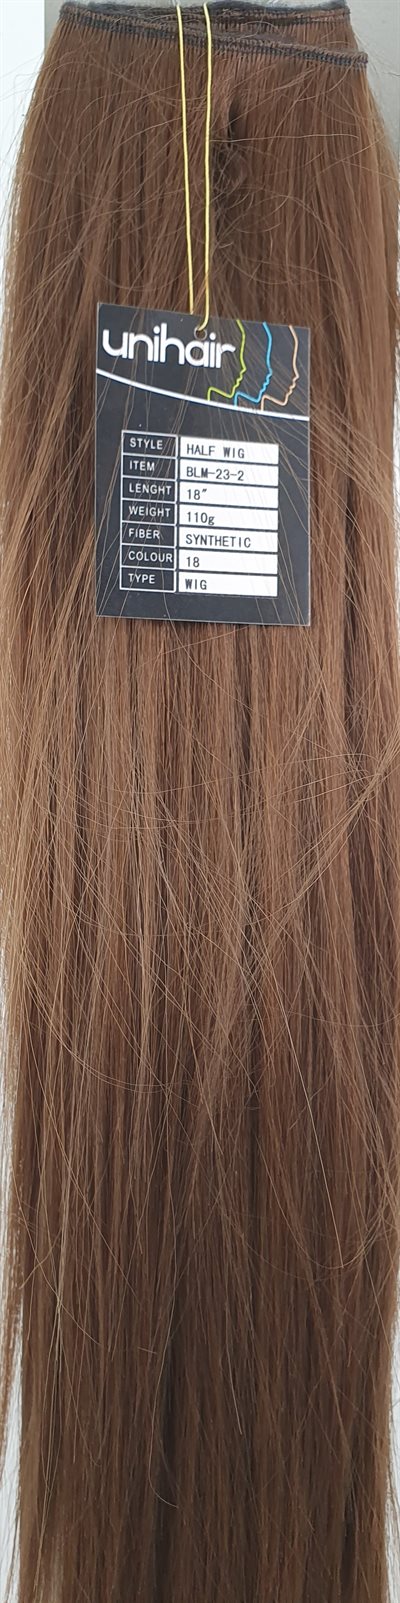 Silky stright Half Wig. 18" længde. Farve 18. Længde 18" (46 cm). Snythetisk.